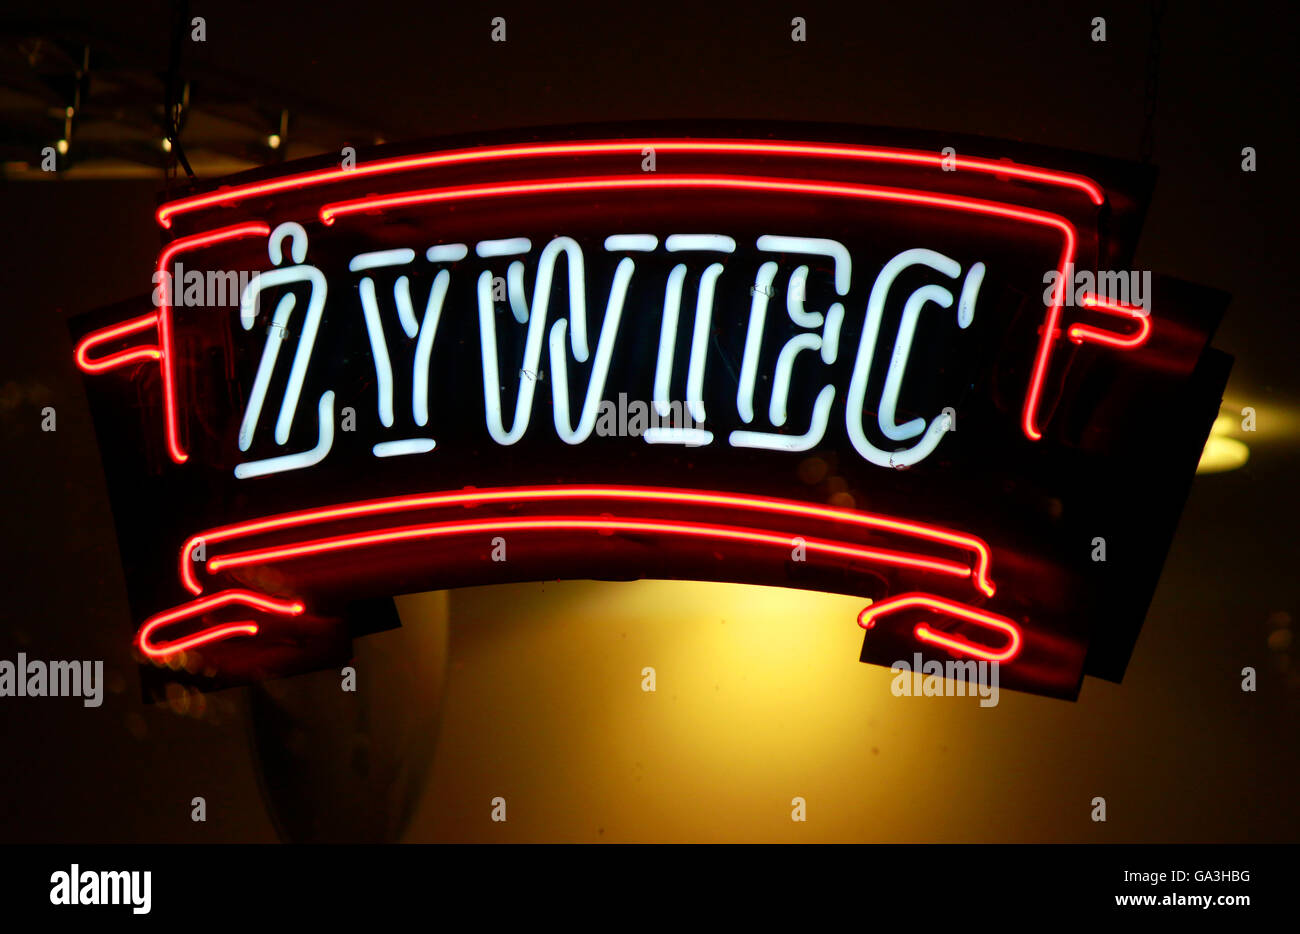 Das Logo der Marke "Zywiec", Swinemuende, Polen. Stockfoto